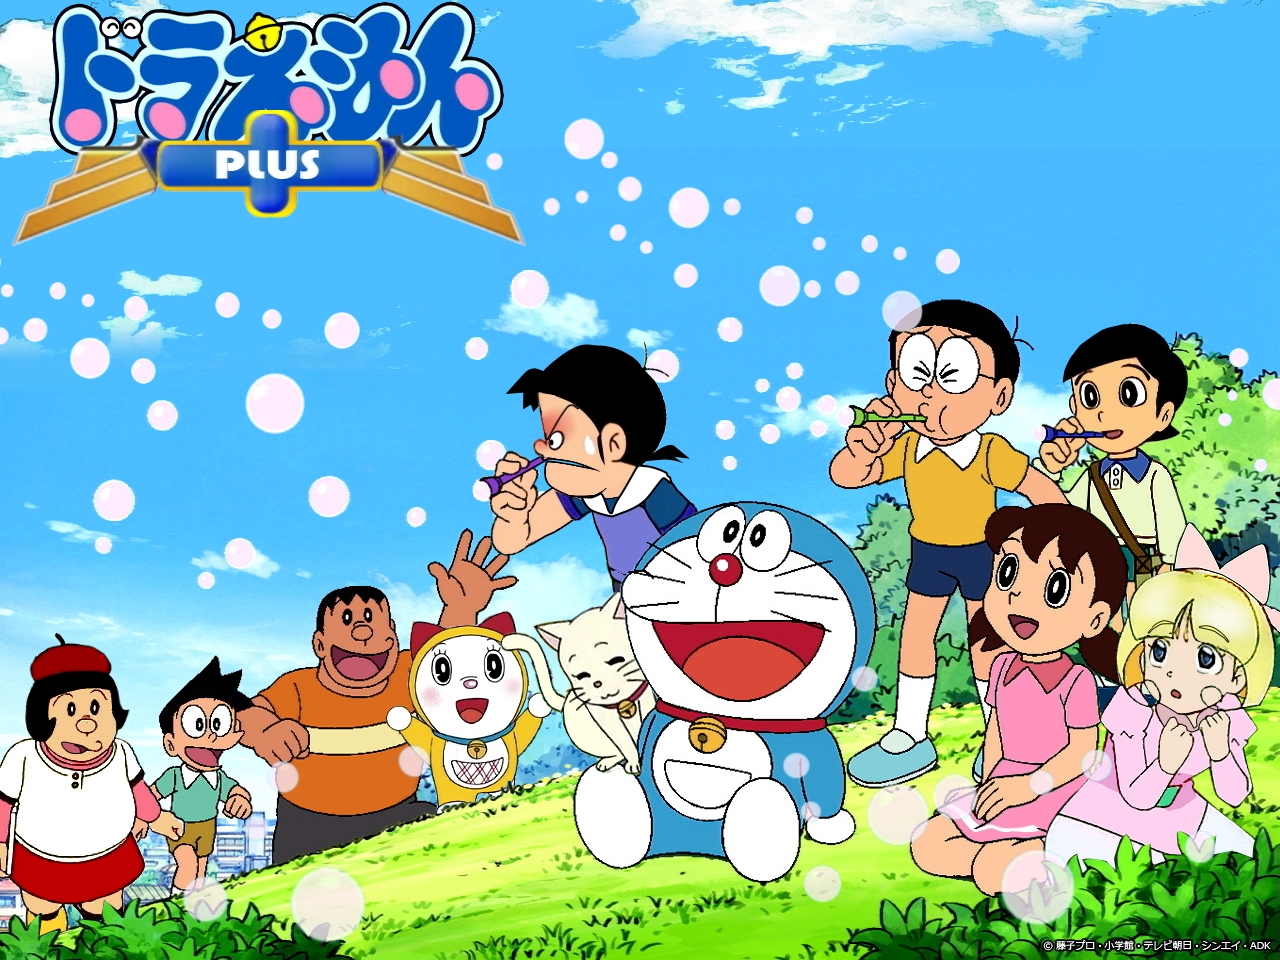 Với Ảnh Doraemon được sưu tầm và chỉnh sửa kỹ lưỡng, bạn sẽ được chiêm ngưỡng những hình ảnh đáng yêu và thú vị của chú mèo máy này. Đừng ngần ngại để trang trí máy tính của bạn với những ảnh Doremon tuyệt đẹp này.